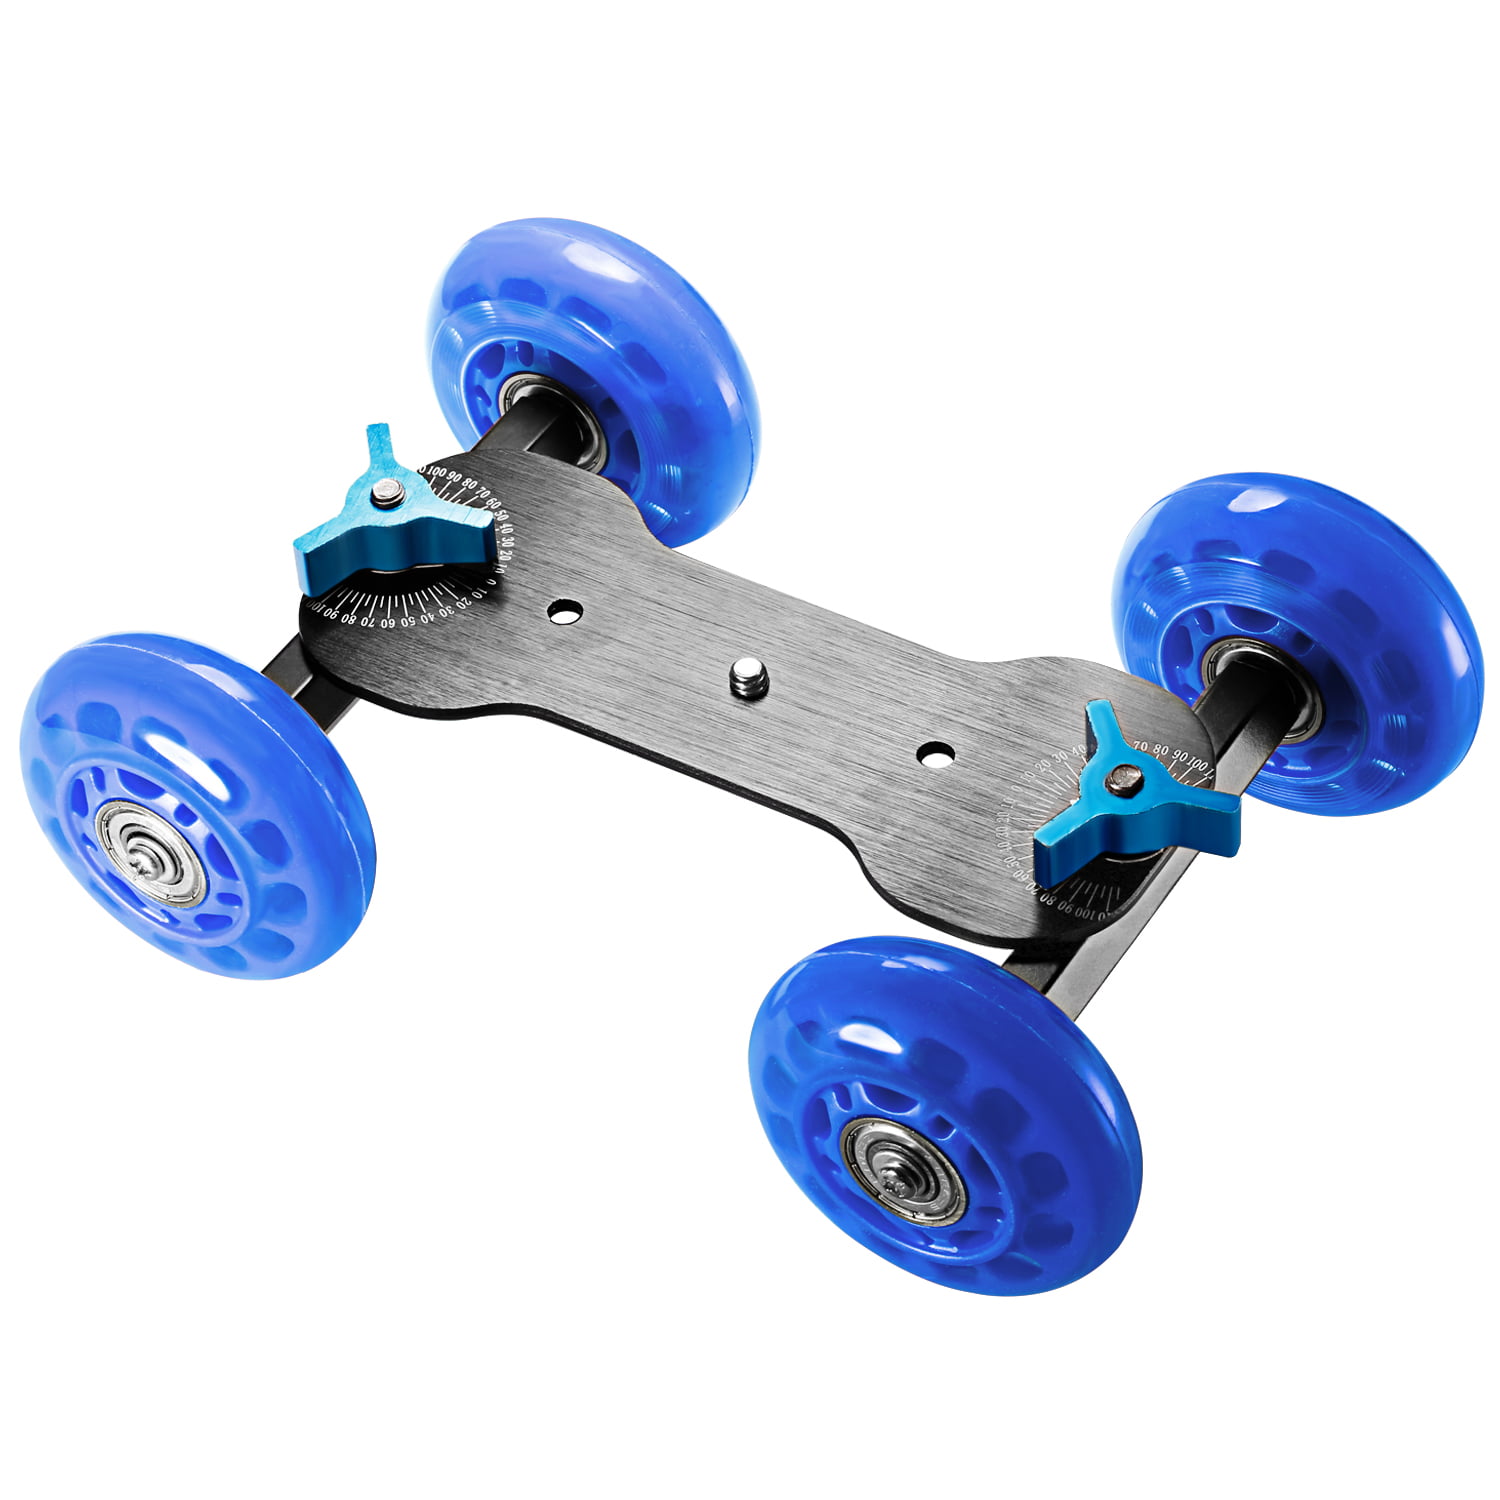 Neewer Professional Tabletop Mobile Rolling Slider Dolly Car Skater Video Track Rail for Digital SLR Cameras & Video Camcorders/LED Lights/Flash Light Blue 